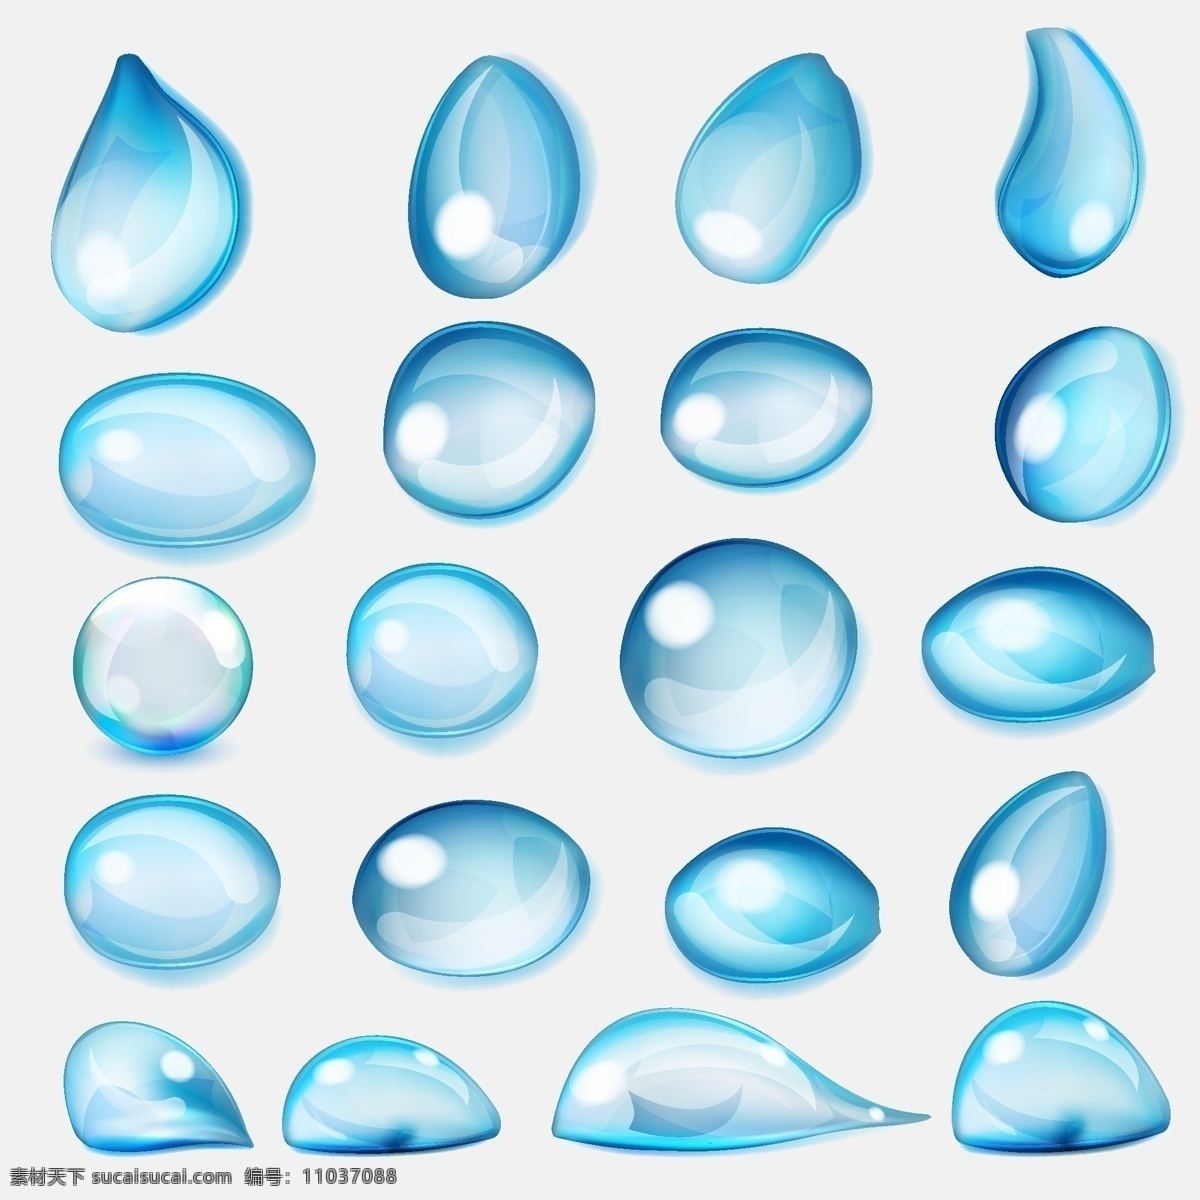 水滴矢量素材 水滴 矢量素材 水滴矢量 矢量 蓝色水滴 飞溅水滴 水 生活用品 白色